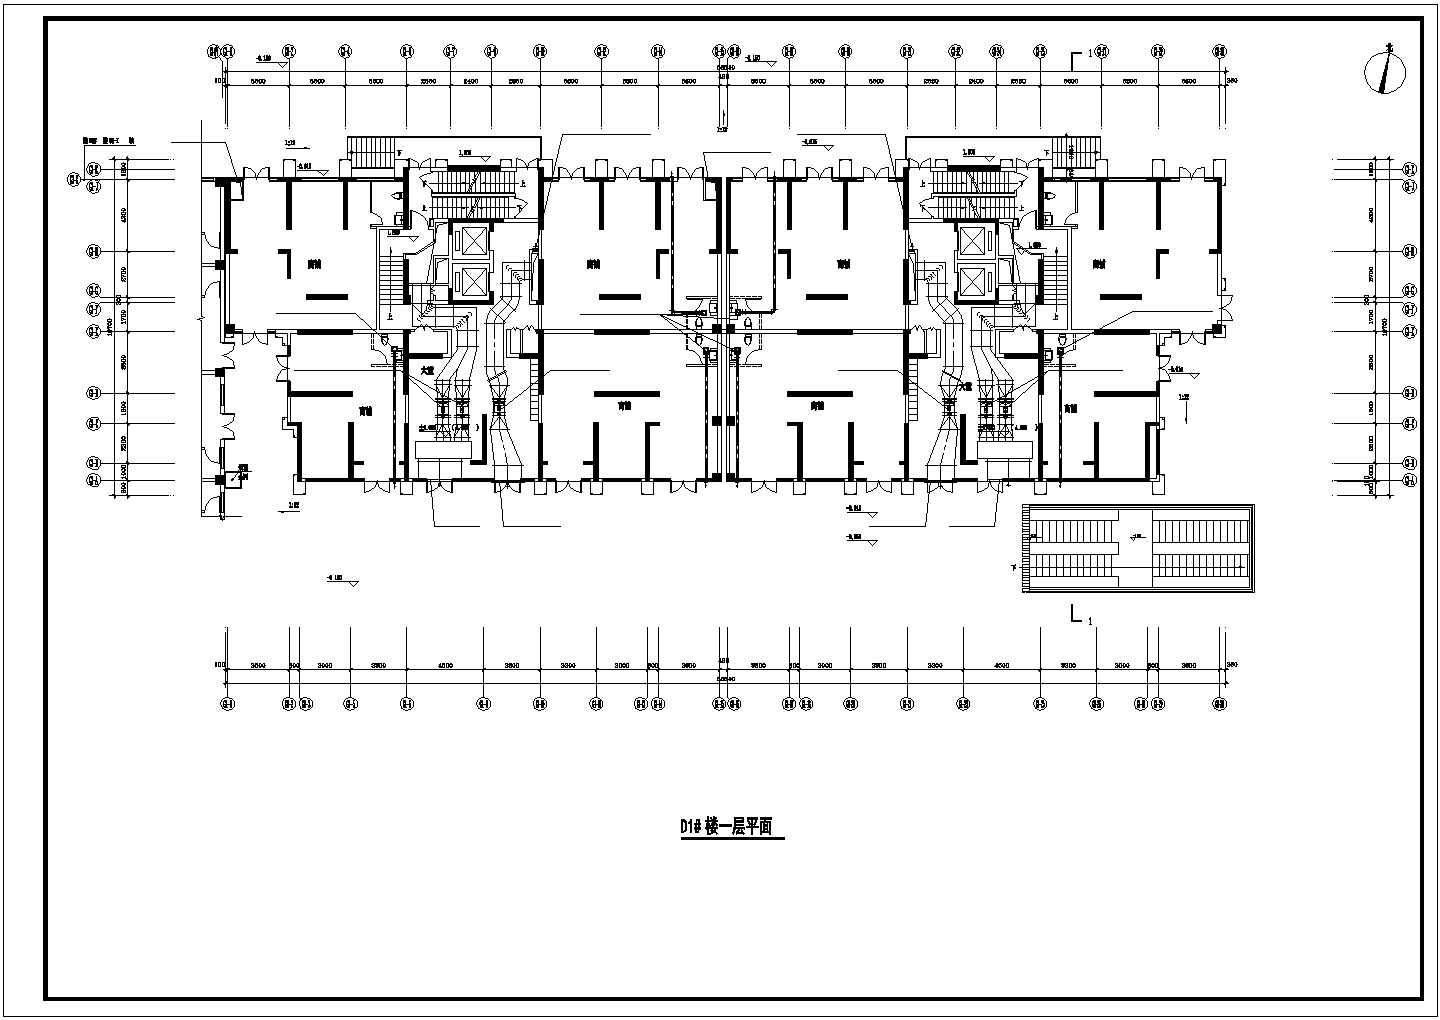 【浙江】高层商业用房及地下室通风防排烟系统设计施工图